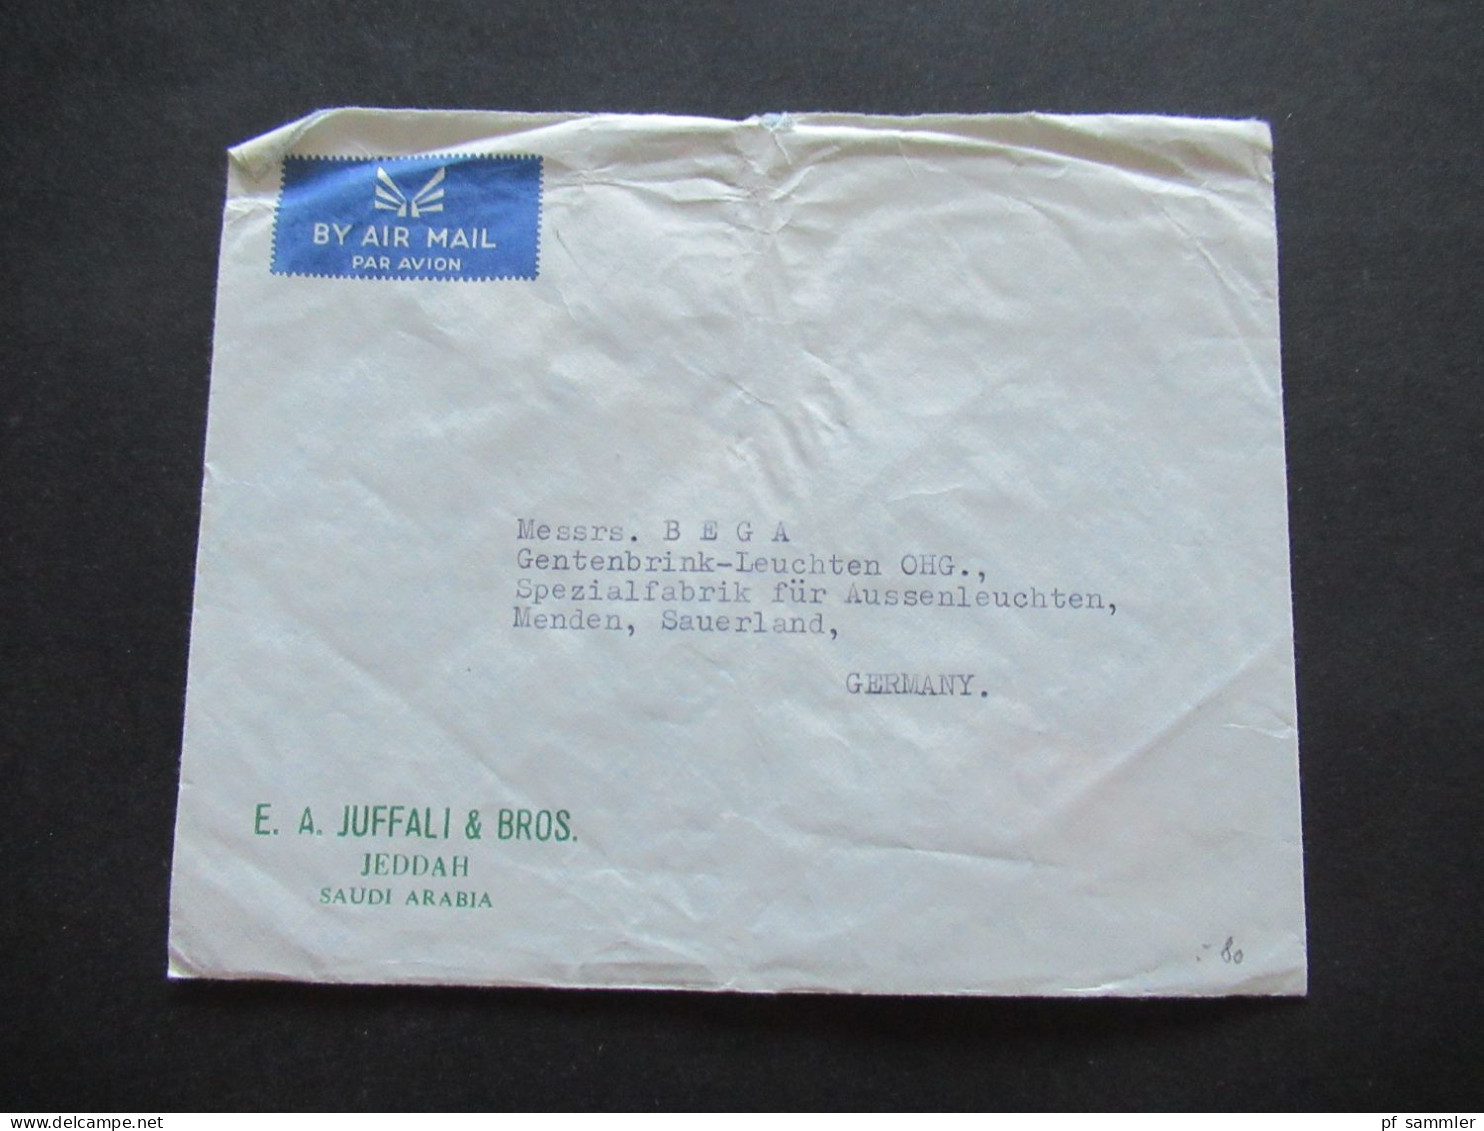 Asien Saudi Arabia um 1963 2x Firmenumschläge Juffali Bros. Air Mail / Luftpost insg. 3 Belege und 1 Briefstück!!